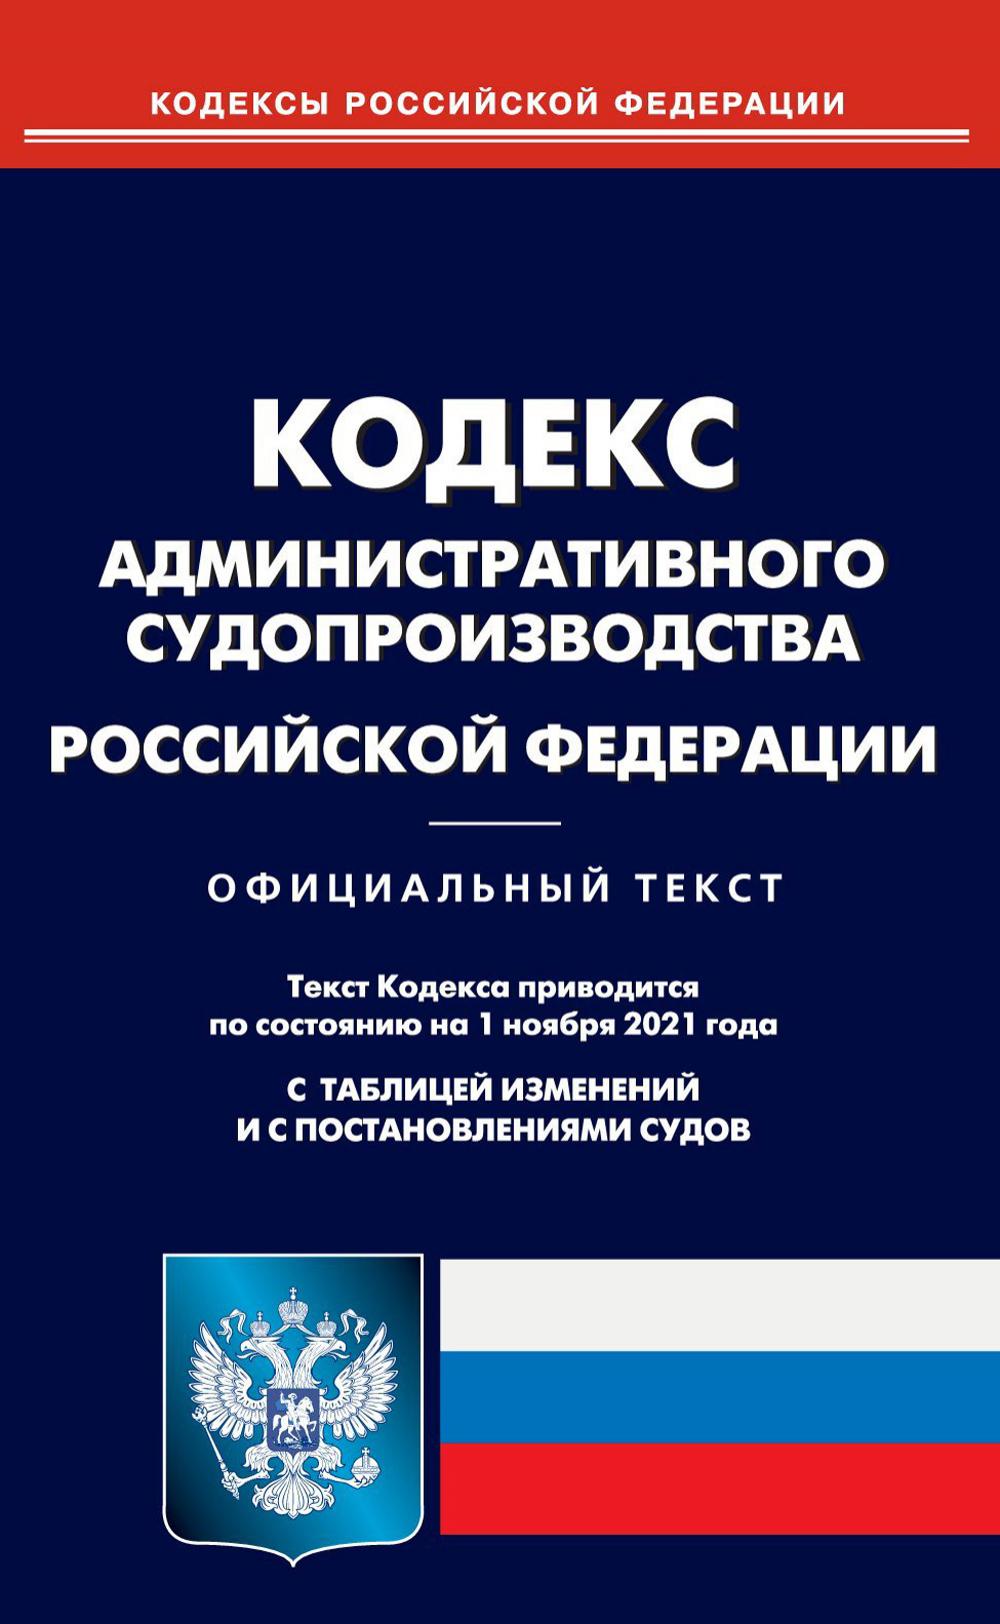 Кодекс административного судопроизводства Российской Федерации (по сост. на 01.11.2021)